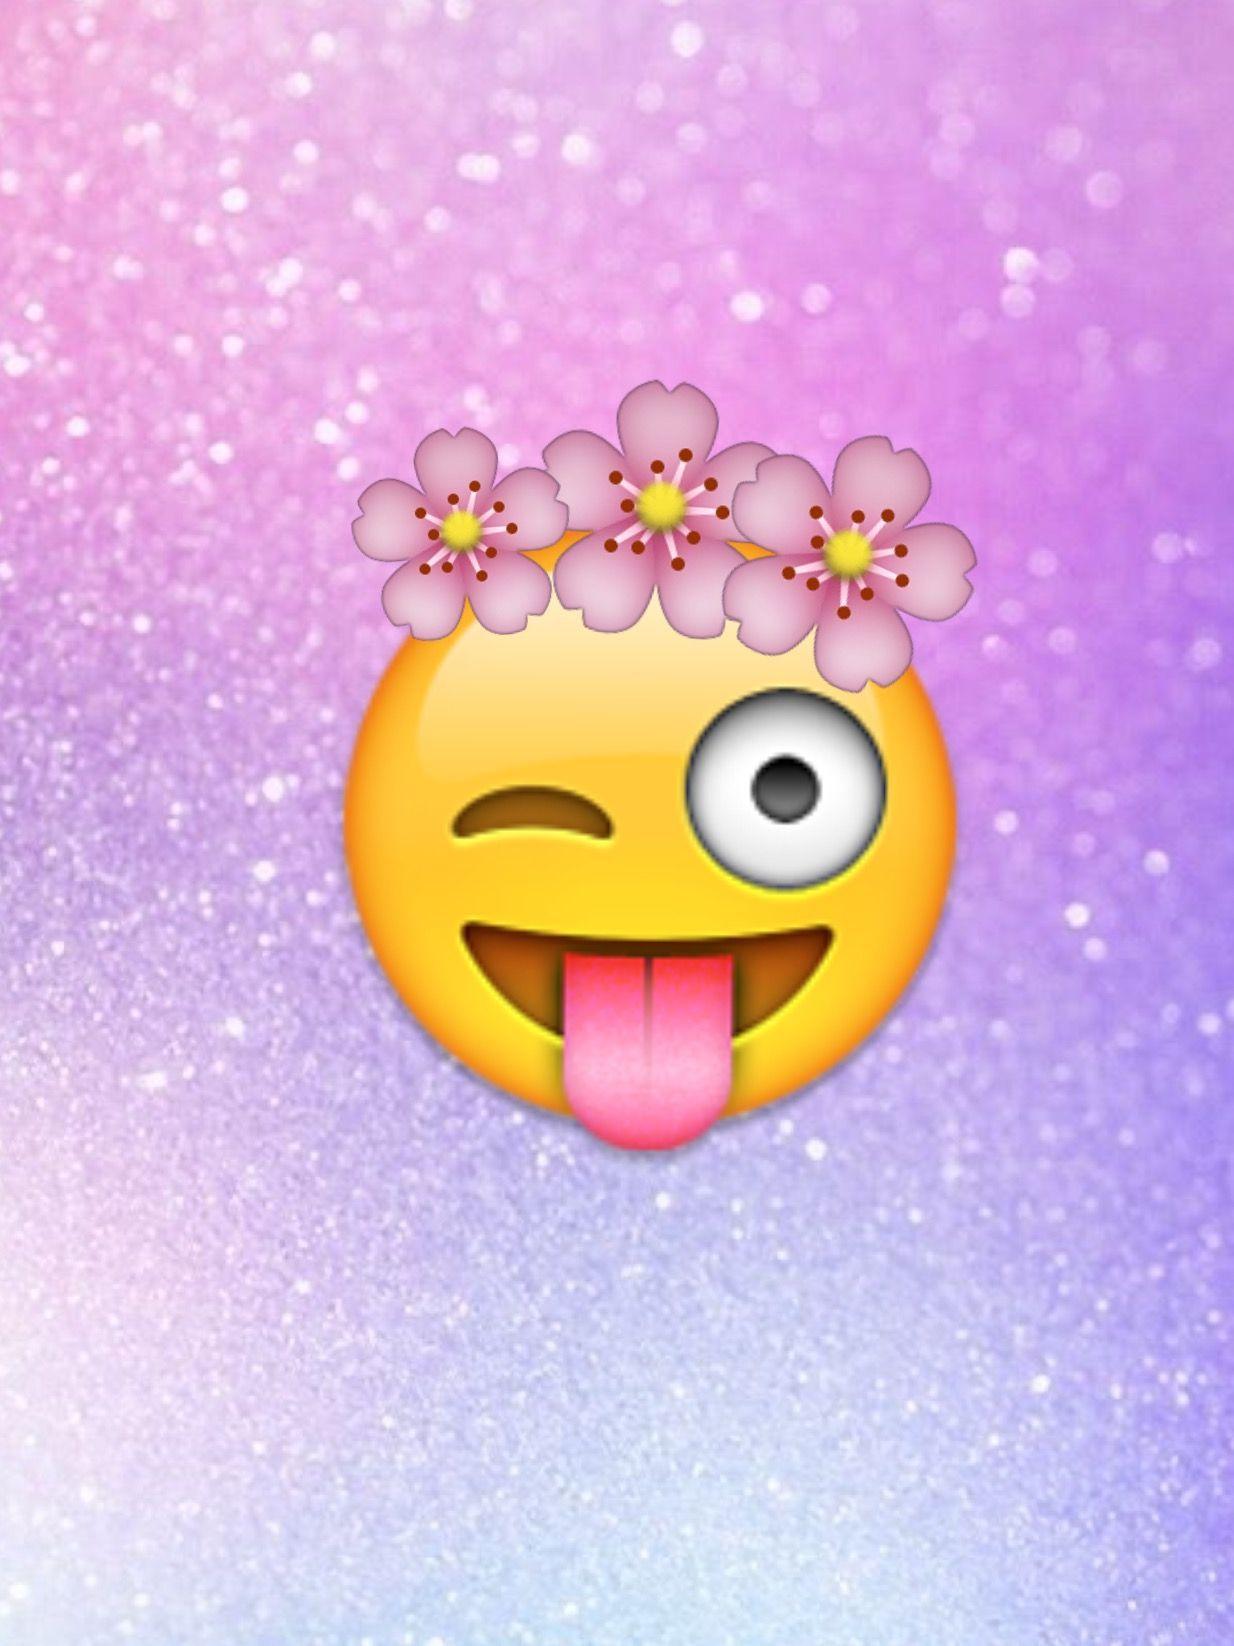 Bad Emojis Wallpapers - Wallpaper Cave